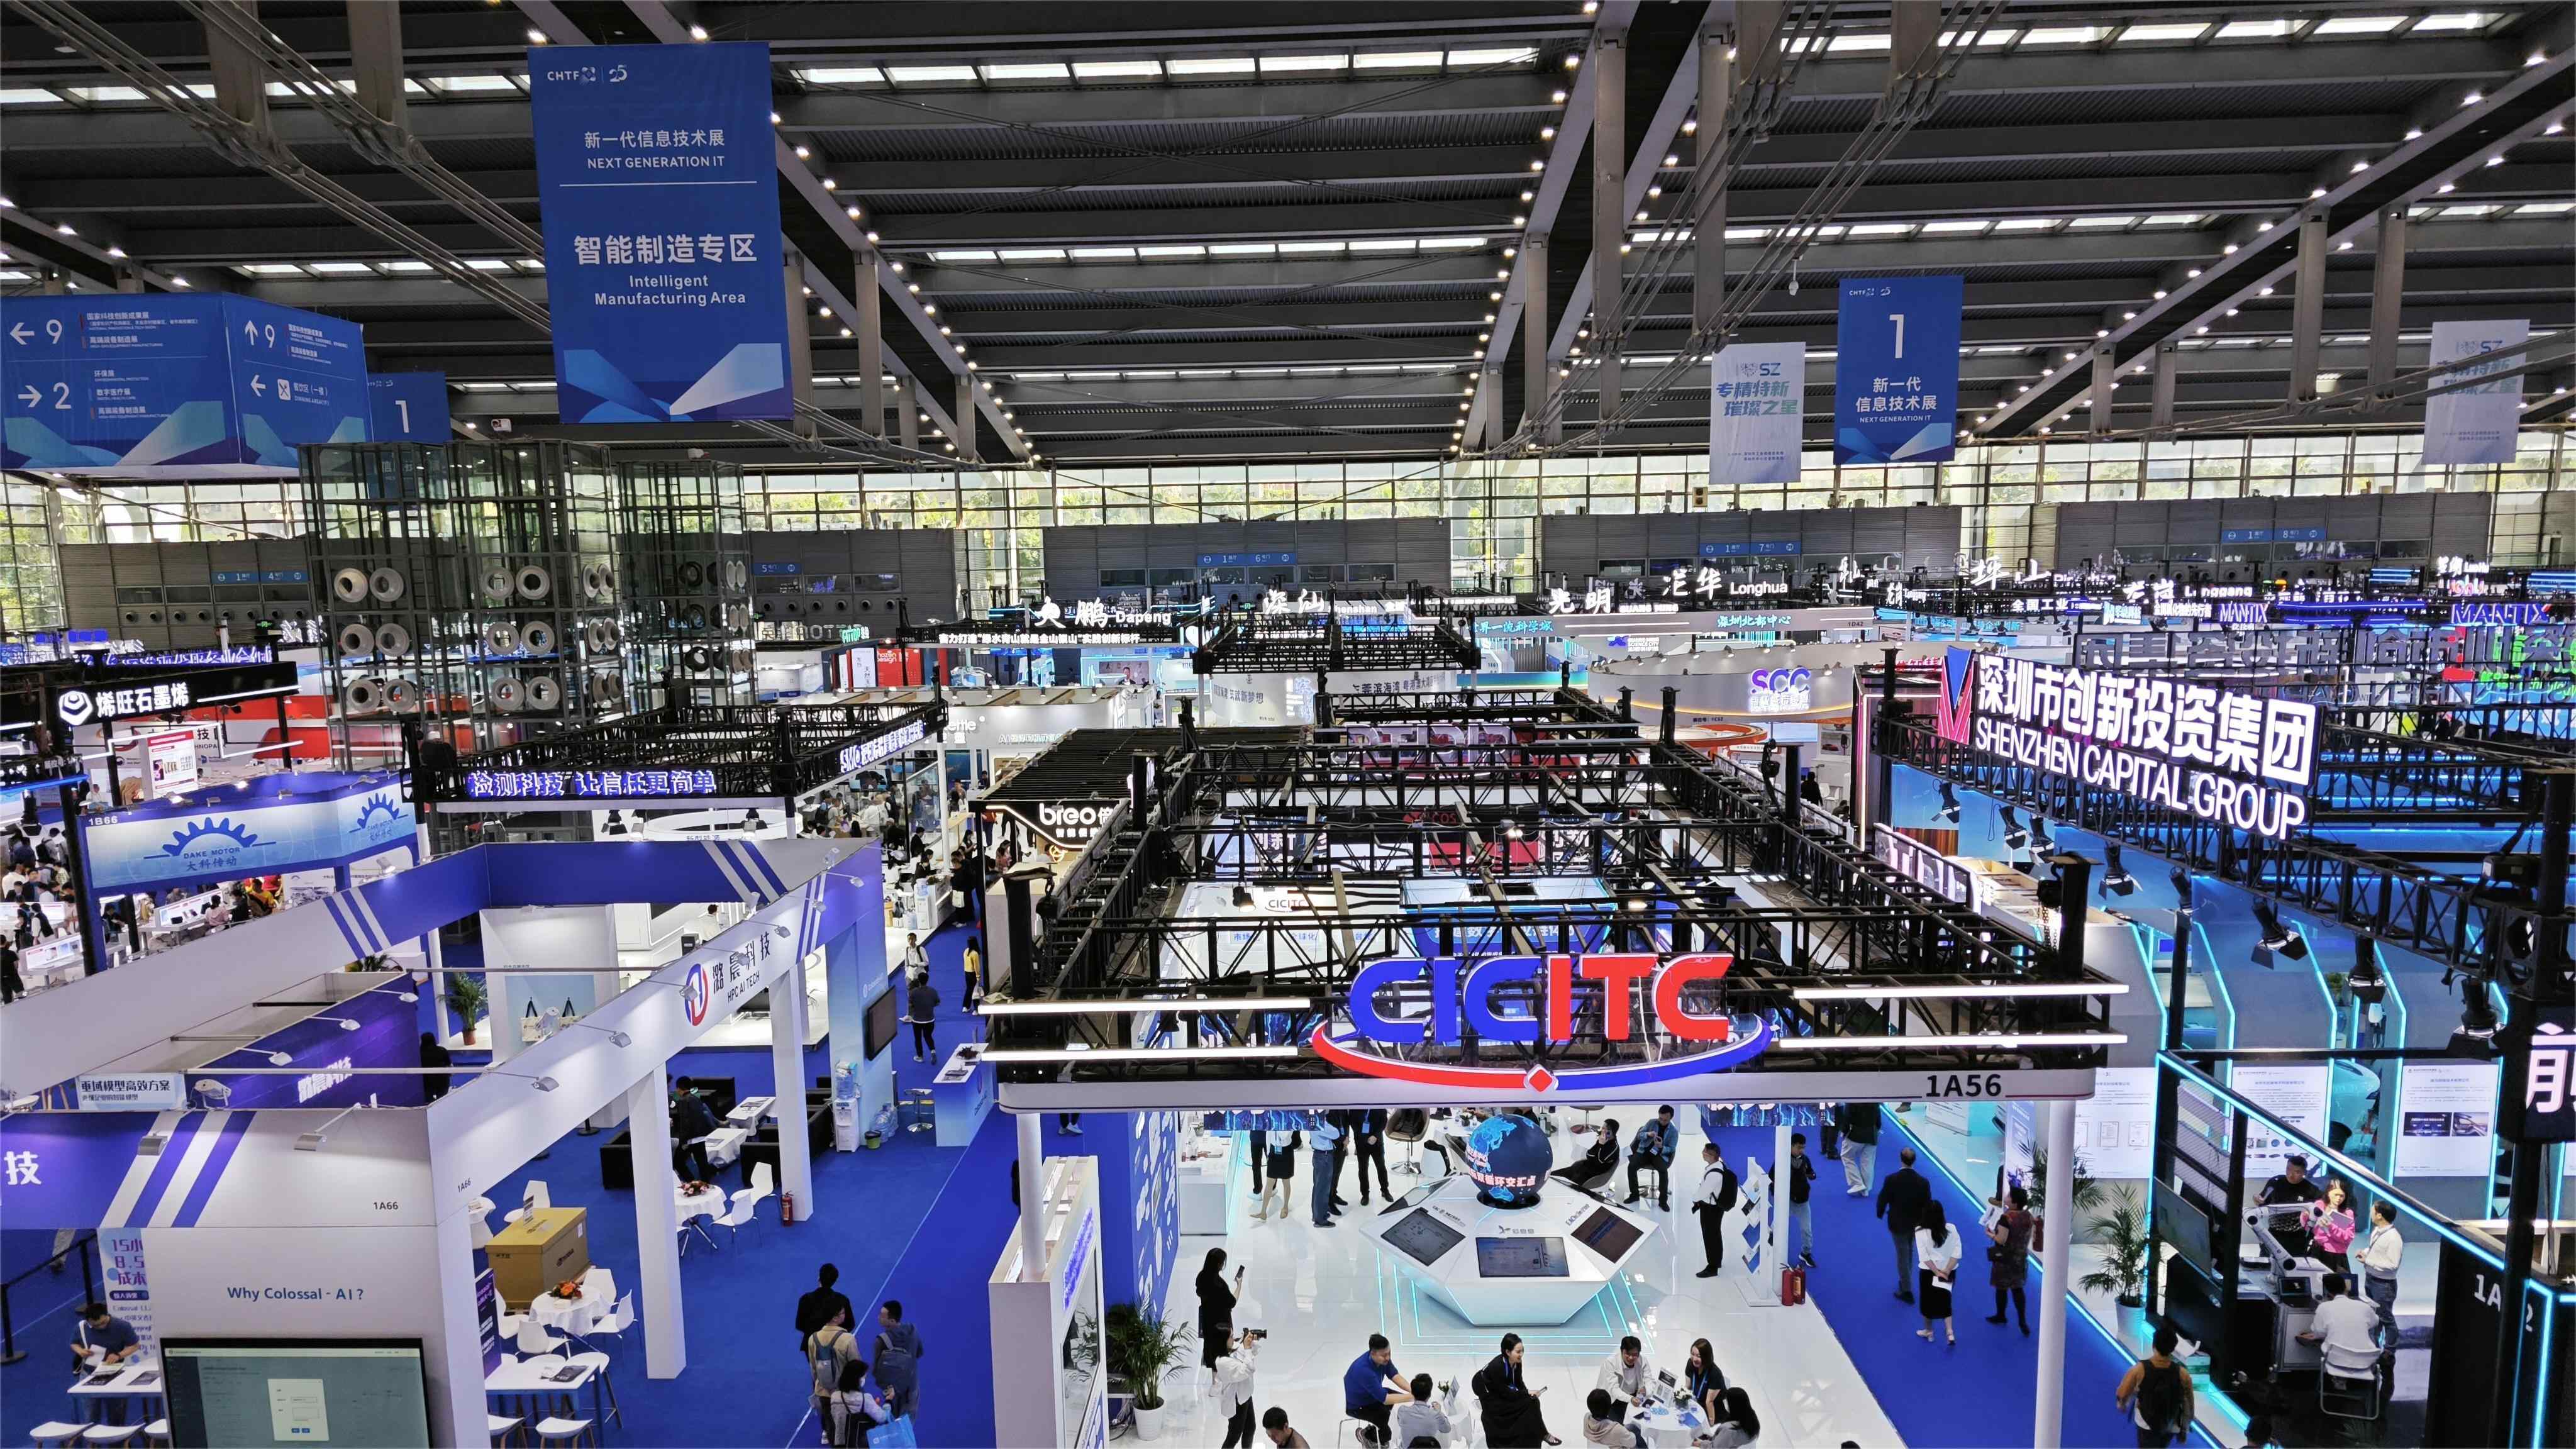 China Hi-Tech Fair showcases cutting-edge products